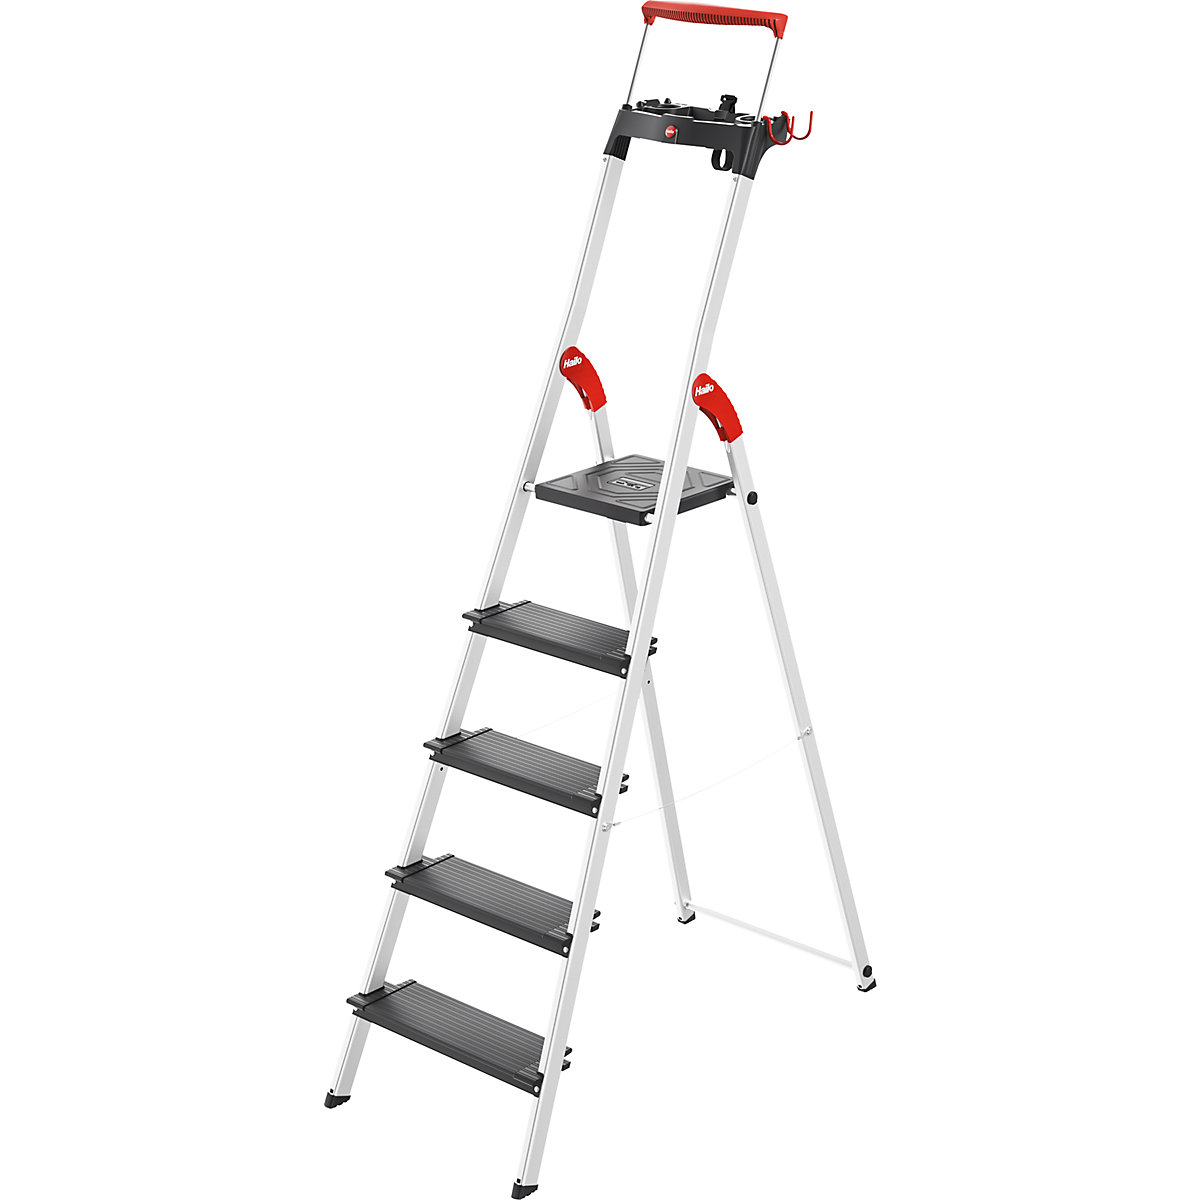 Varnostna lestev TopLine L100 – Hailo, nosilnost do 150 kg, 5 stopnic, od 2 kosov